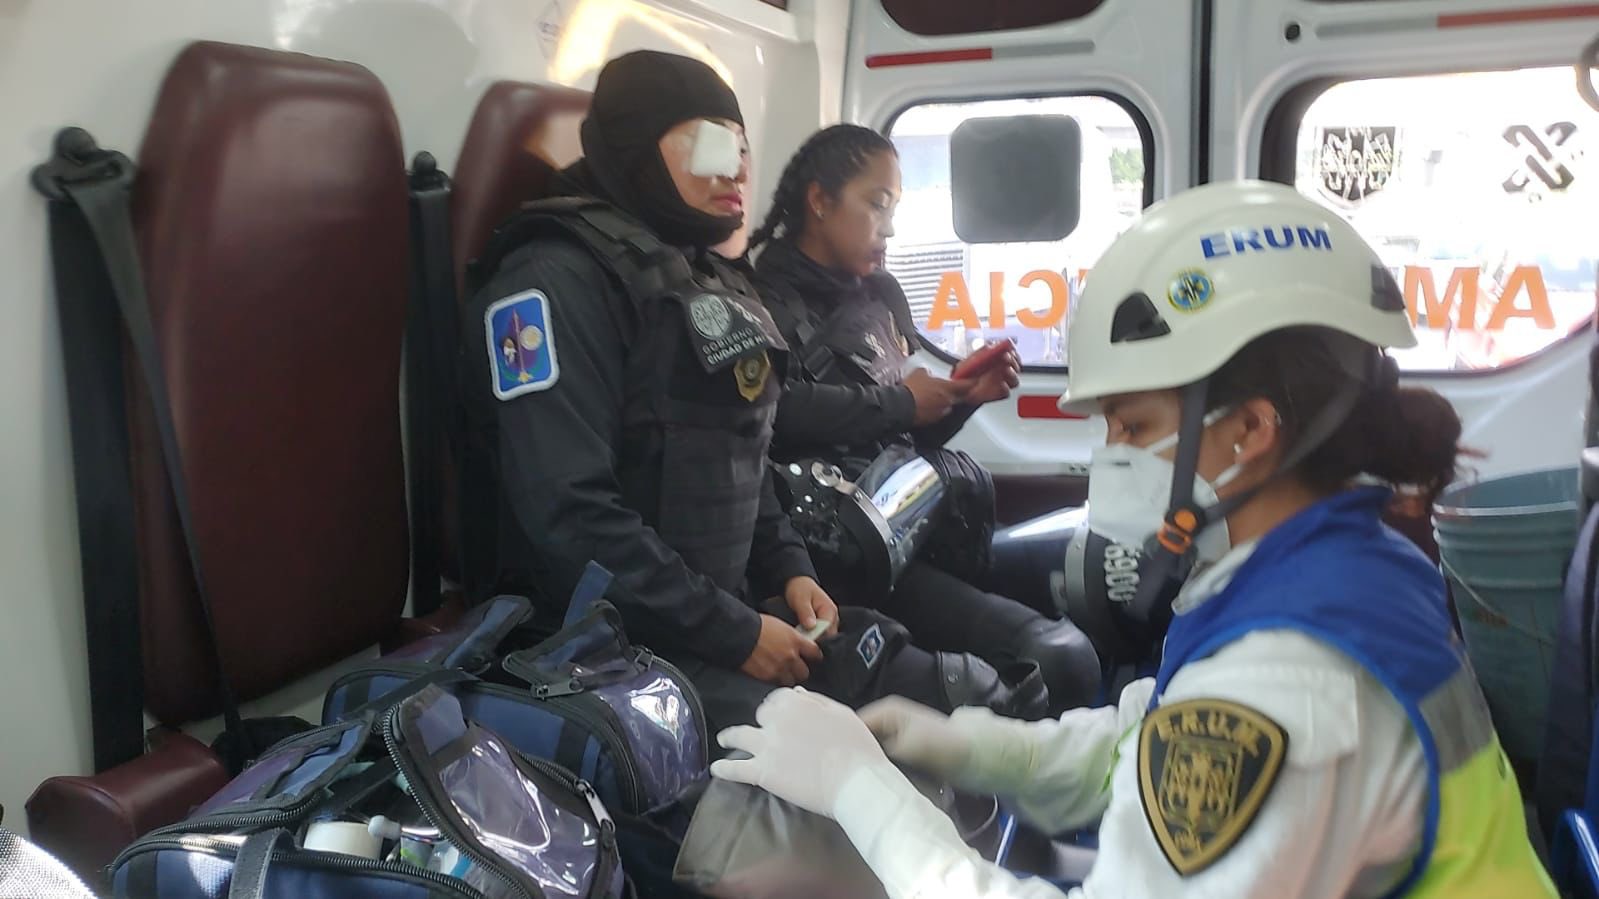 Una mujer policía fue herida en el pómulo con un arma punzocortante, fue trasladada al hospital para ser atendida. (Foto: Twitter / @martibatres)